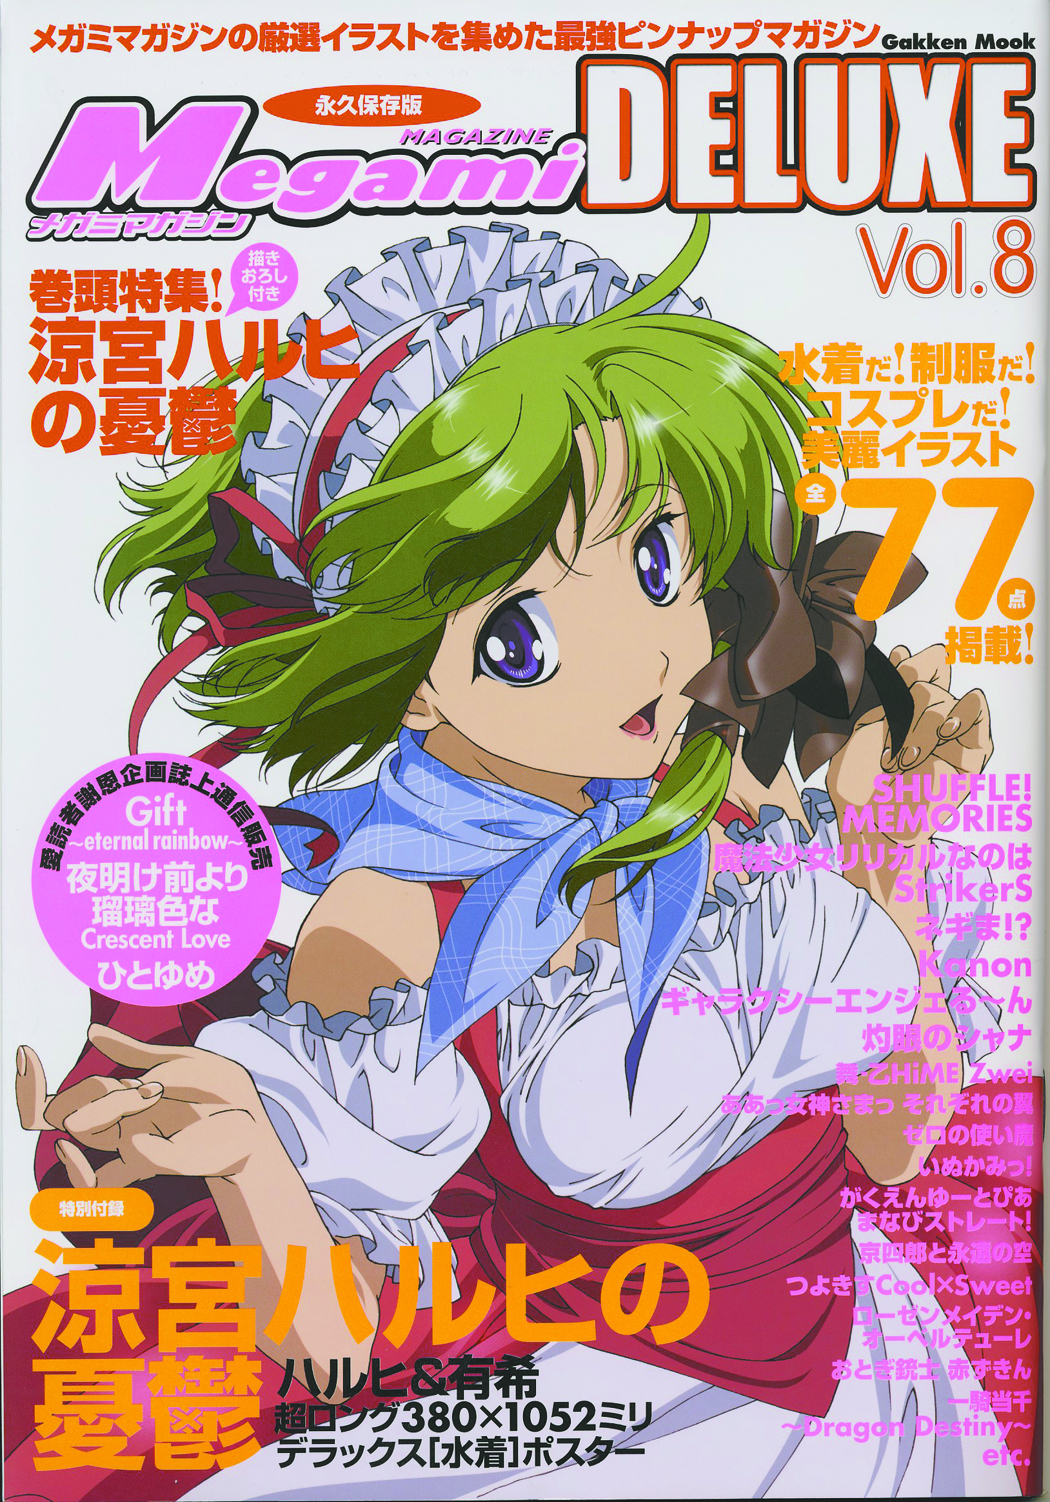 Jun Megami Magazine Deluxe Vol 8 Previews World